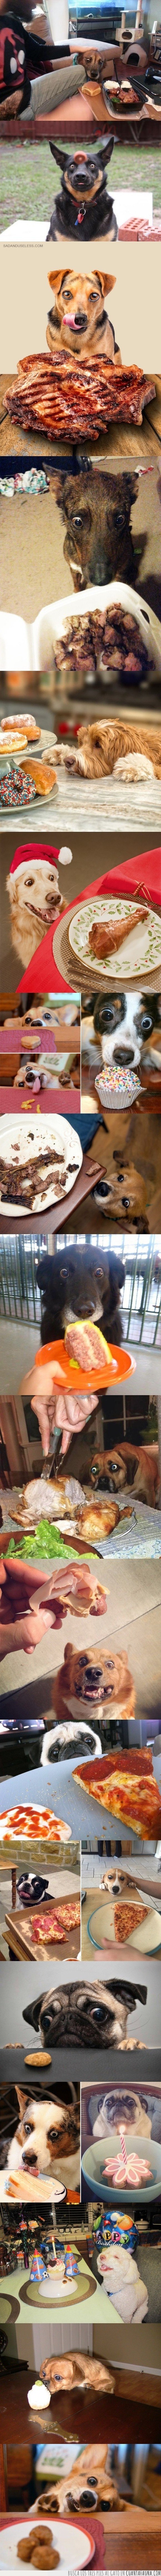 comida,mirando,perros